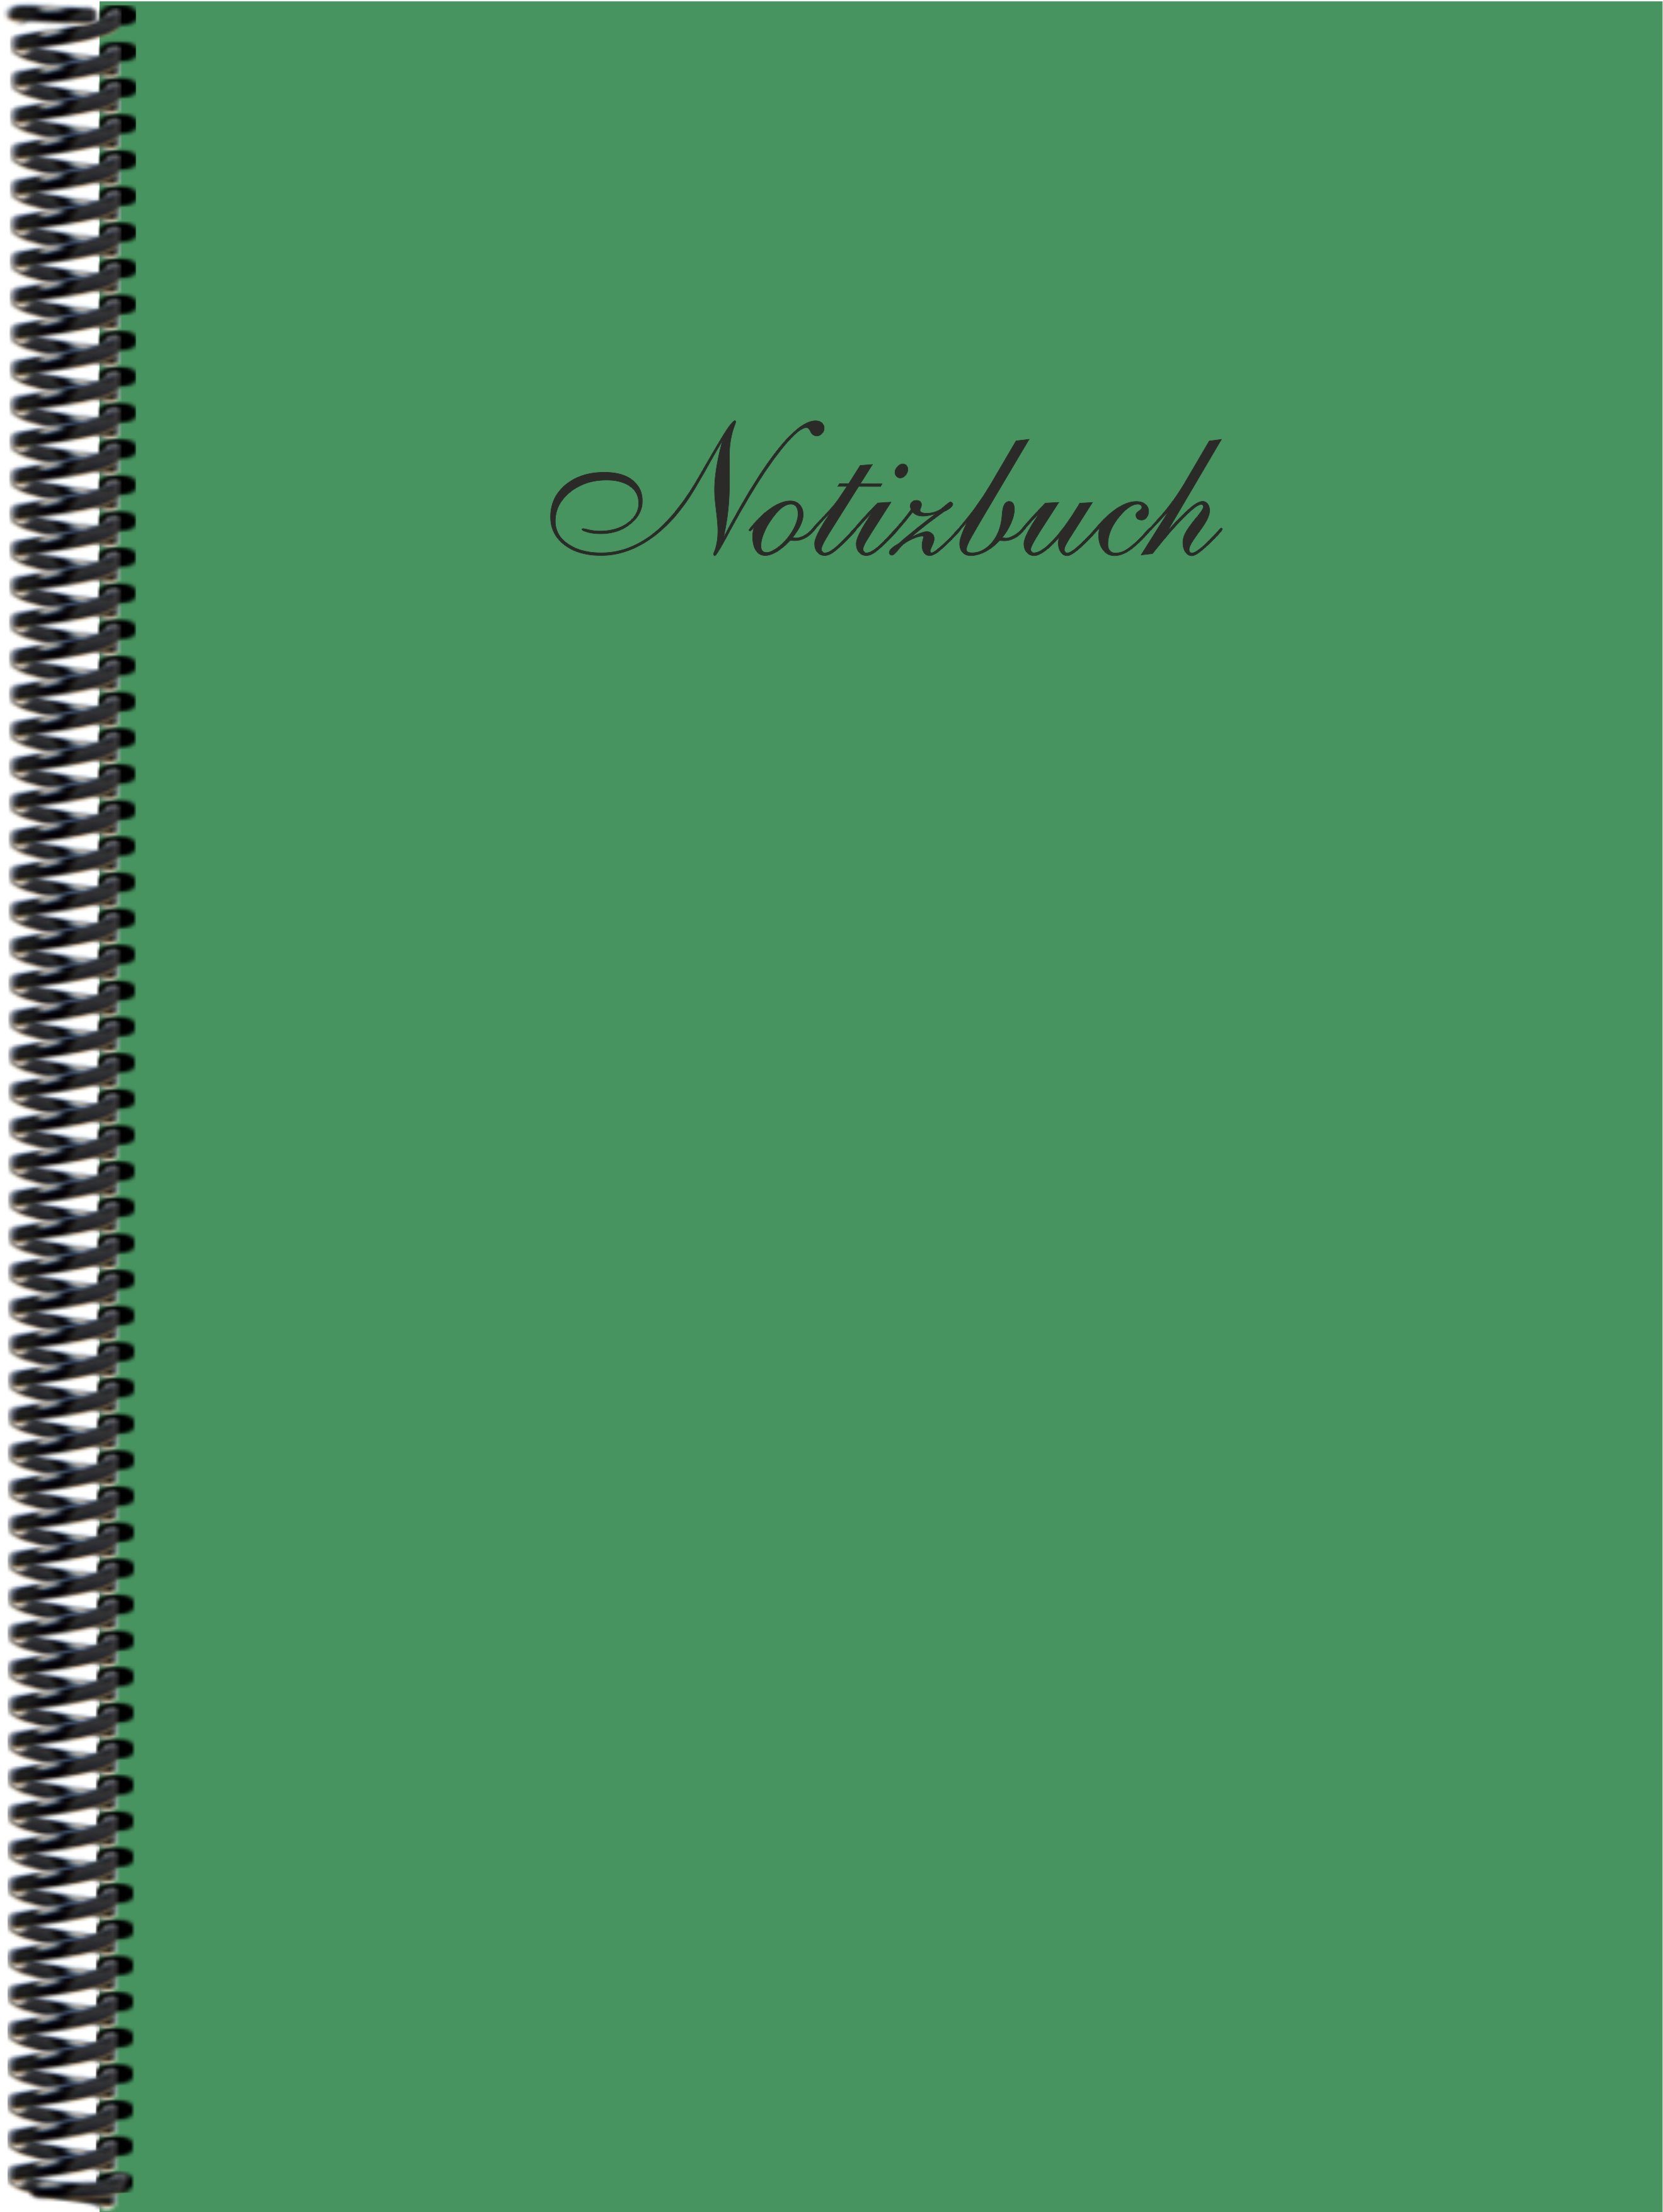 kariert, in DINA4 E&Z Trendfarbe Notizbuch Notizbuch der Verlag Gmbh moosgrün